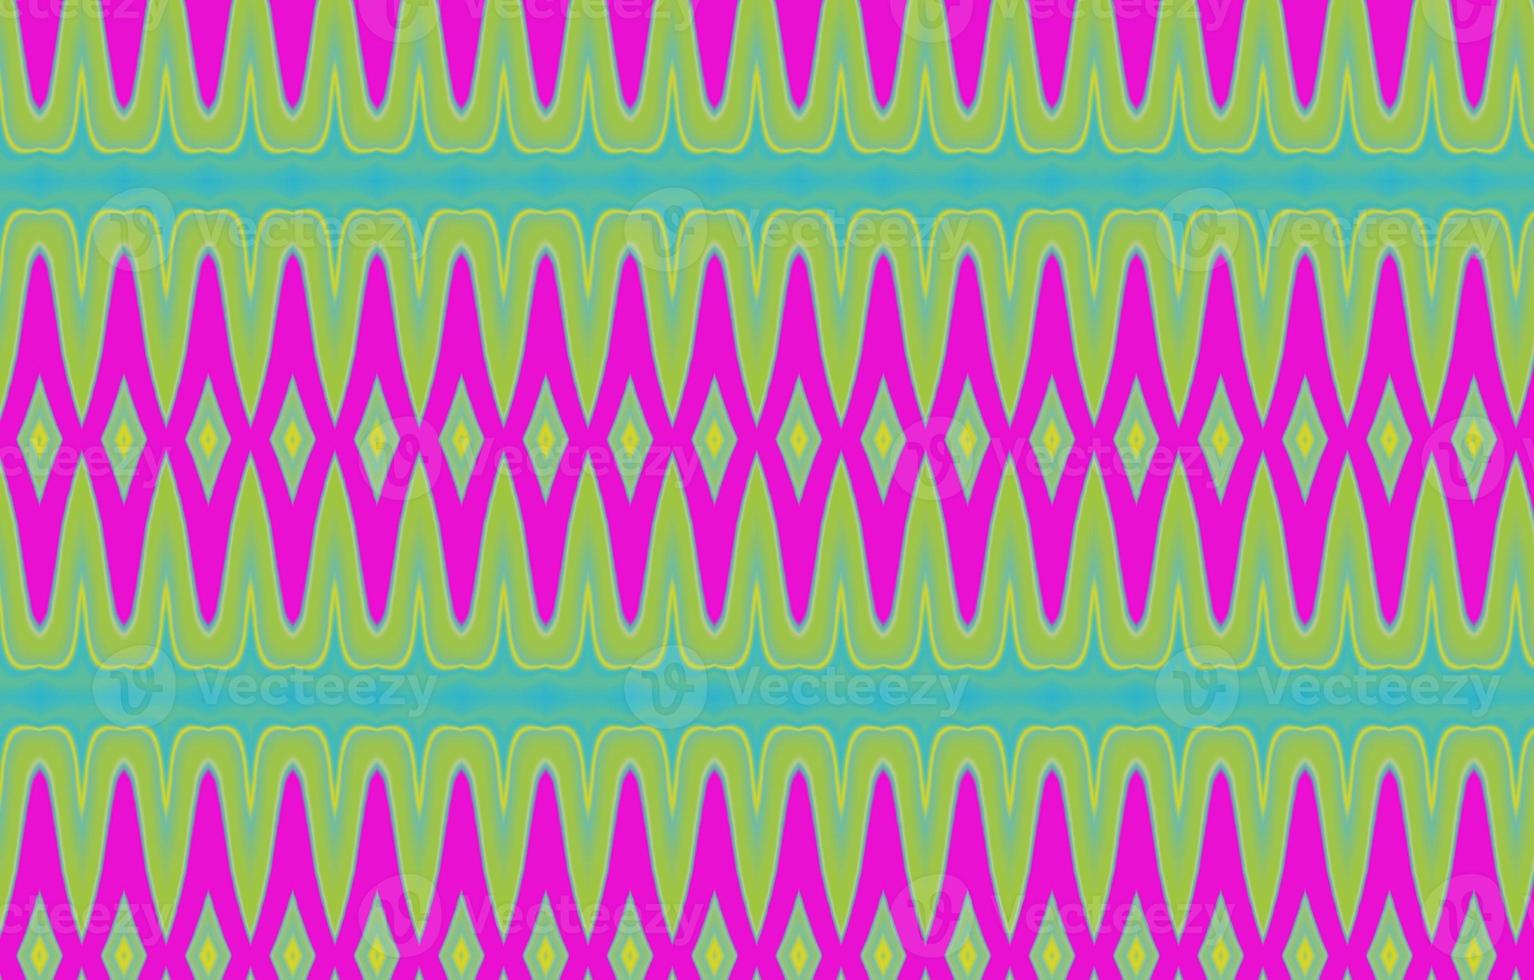 textura con estilo moderno. adorno de rayas geométricas. trenzas lineales monocromáticas. patrón étnico foto